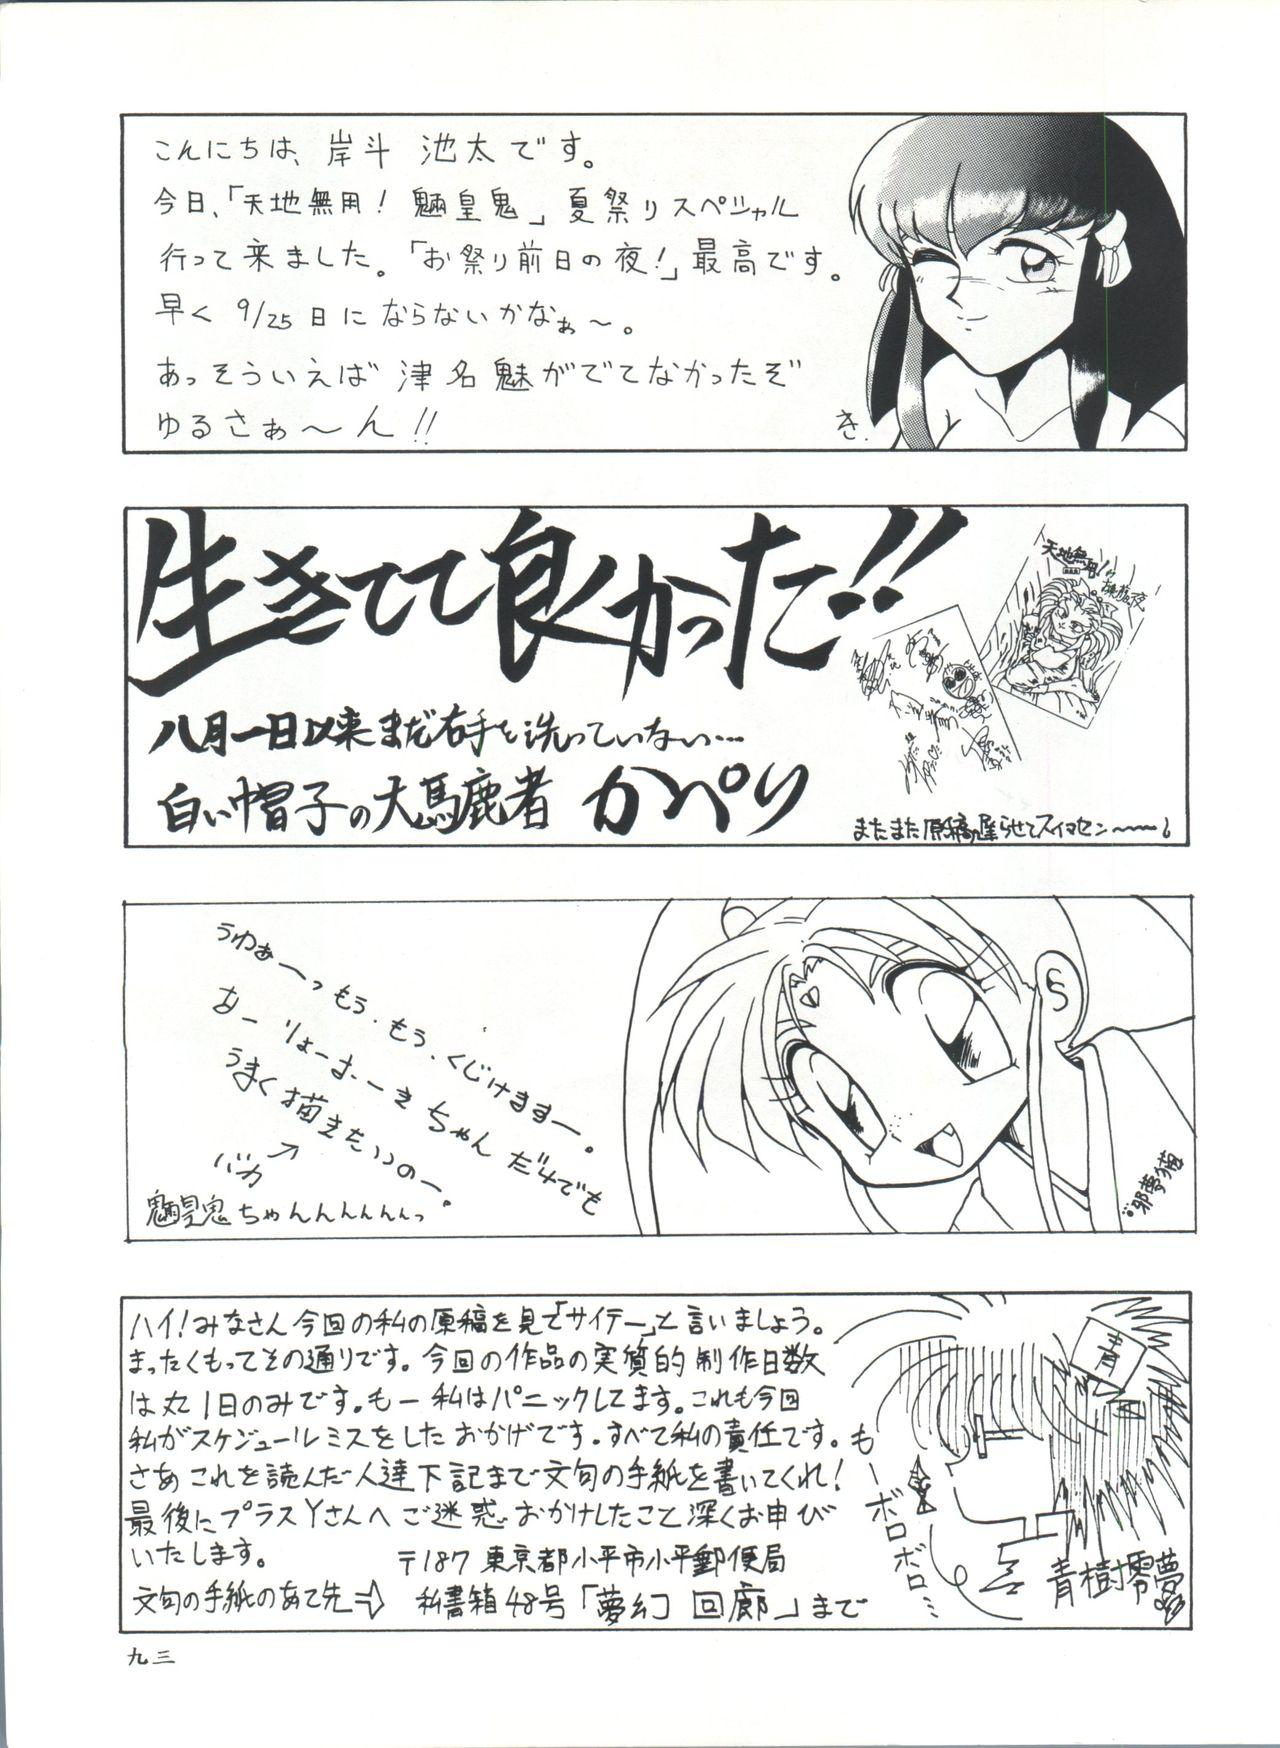 Yanks Featured Plus-Y Vol. 11 Konpeki no Tsukiyo - Tenchi muyo Mexicana - Page 93